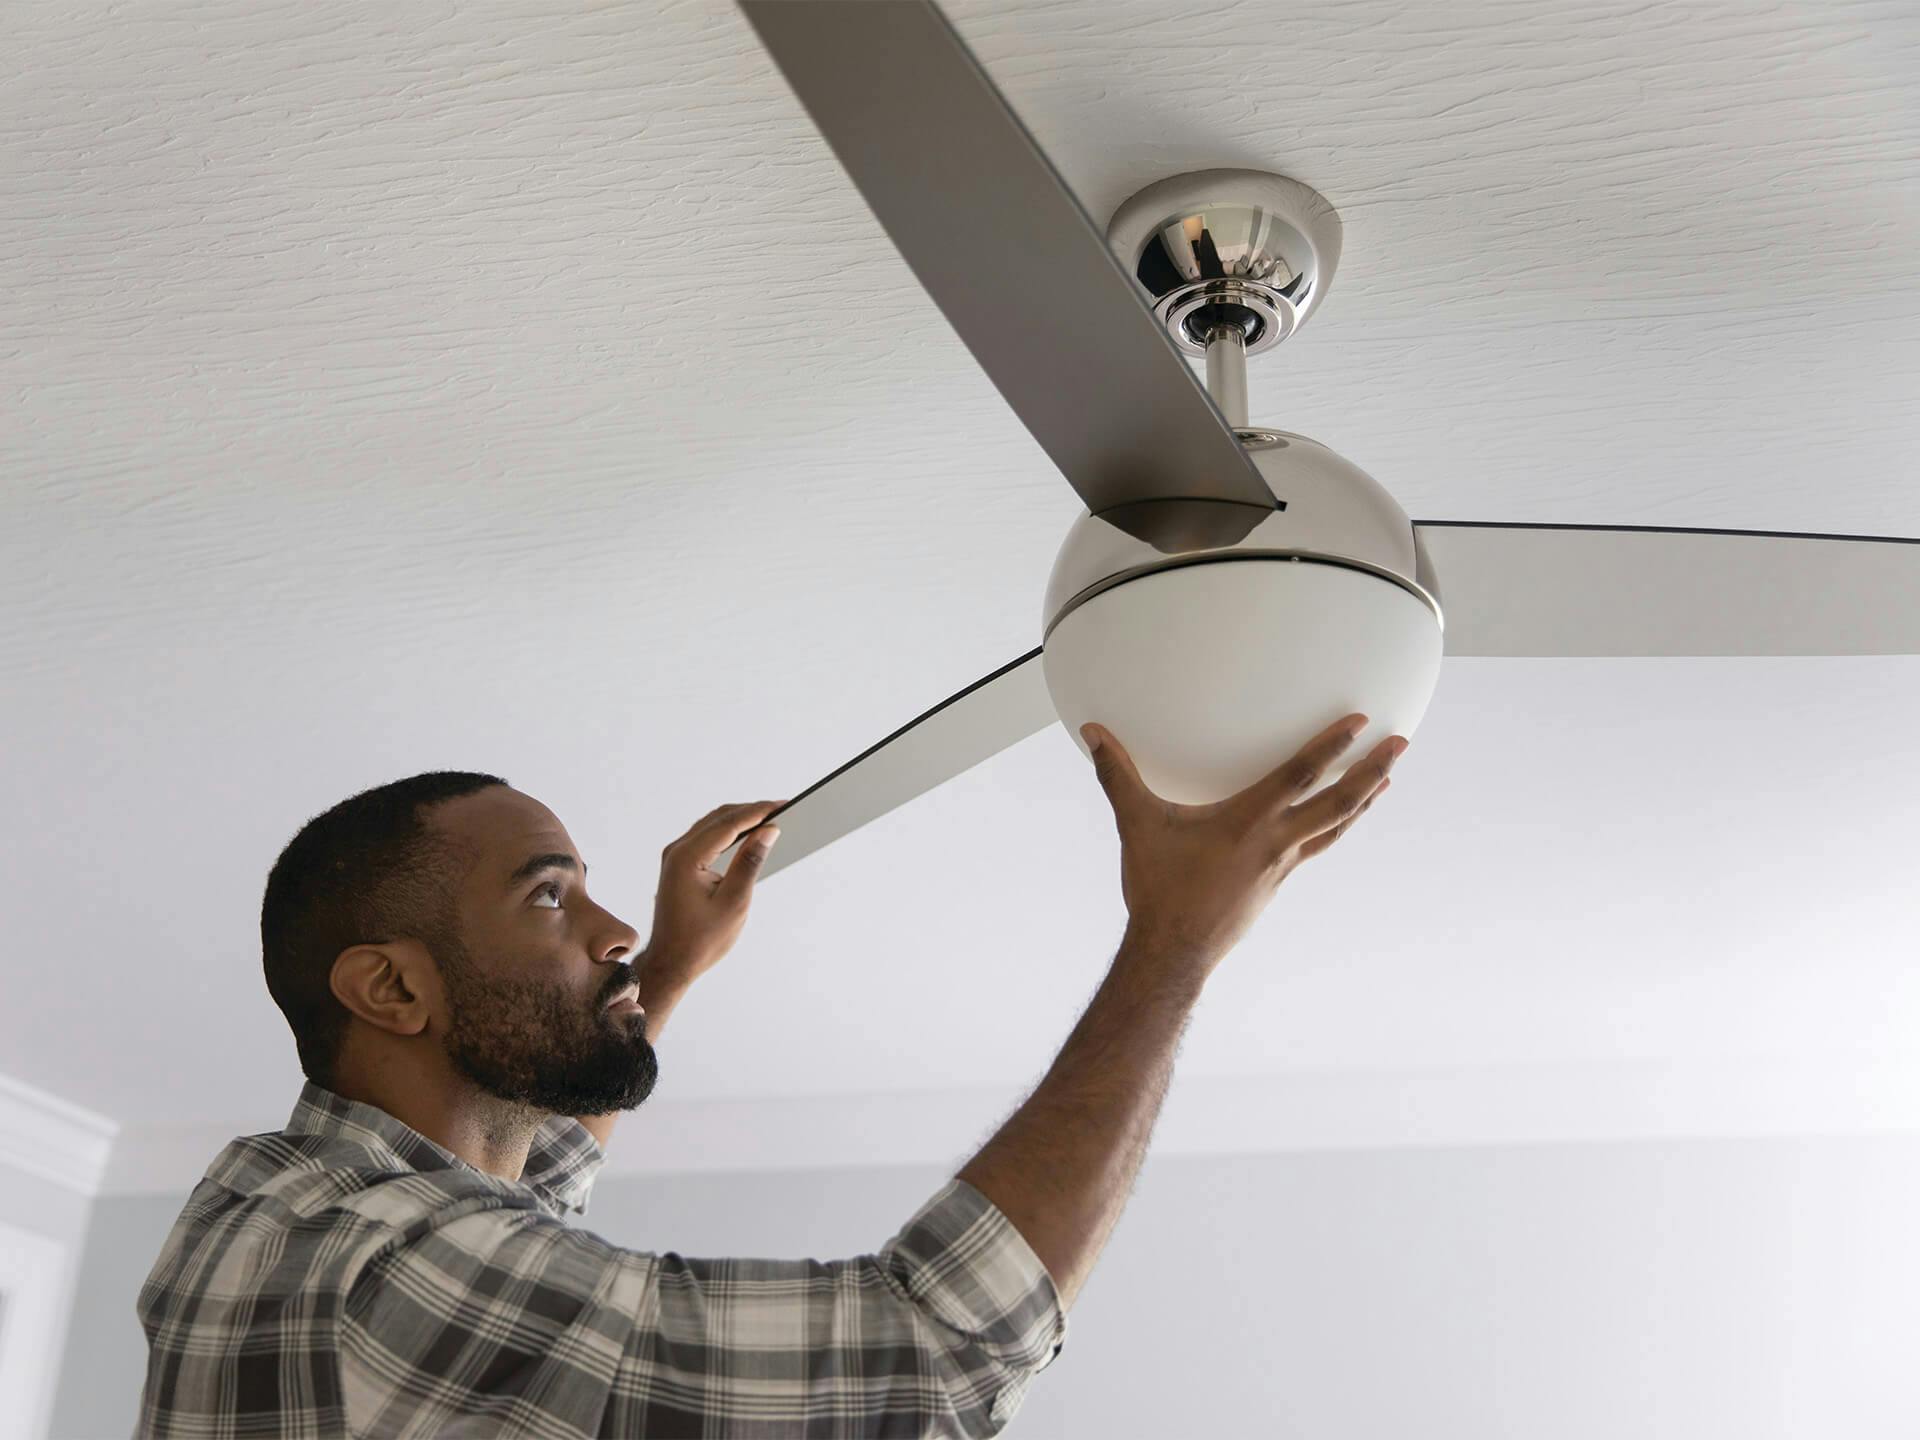 Man inspecting a ceiling fan